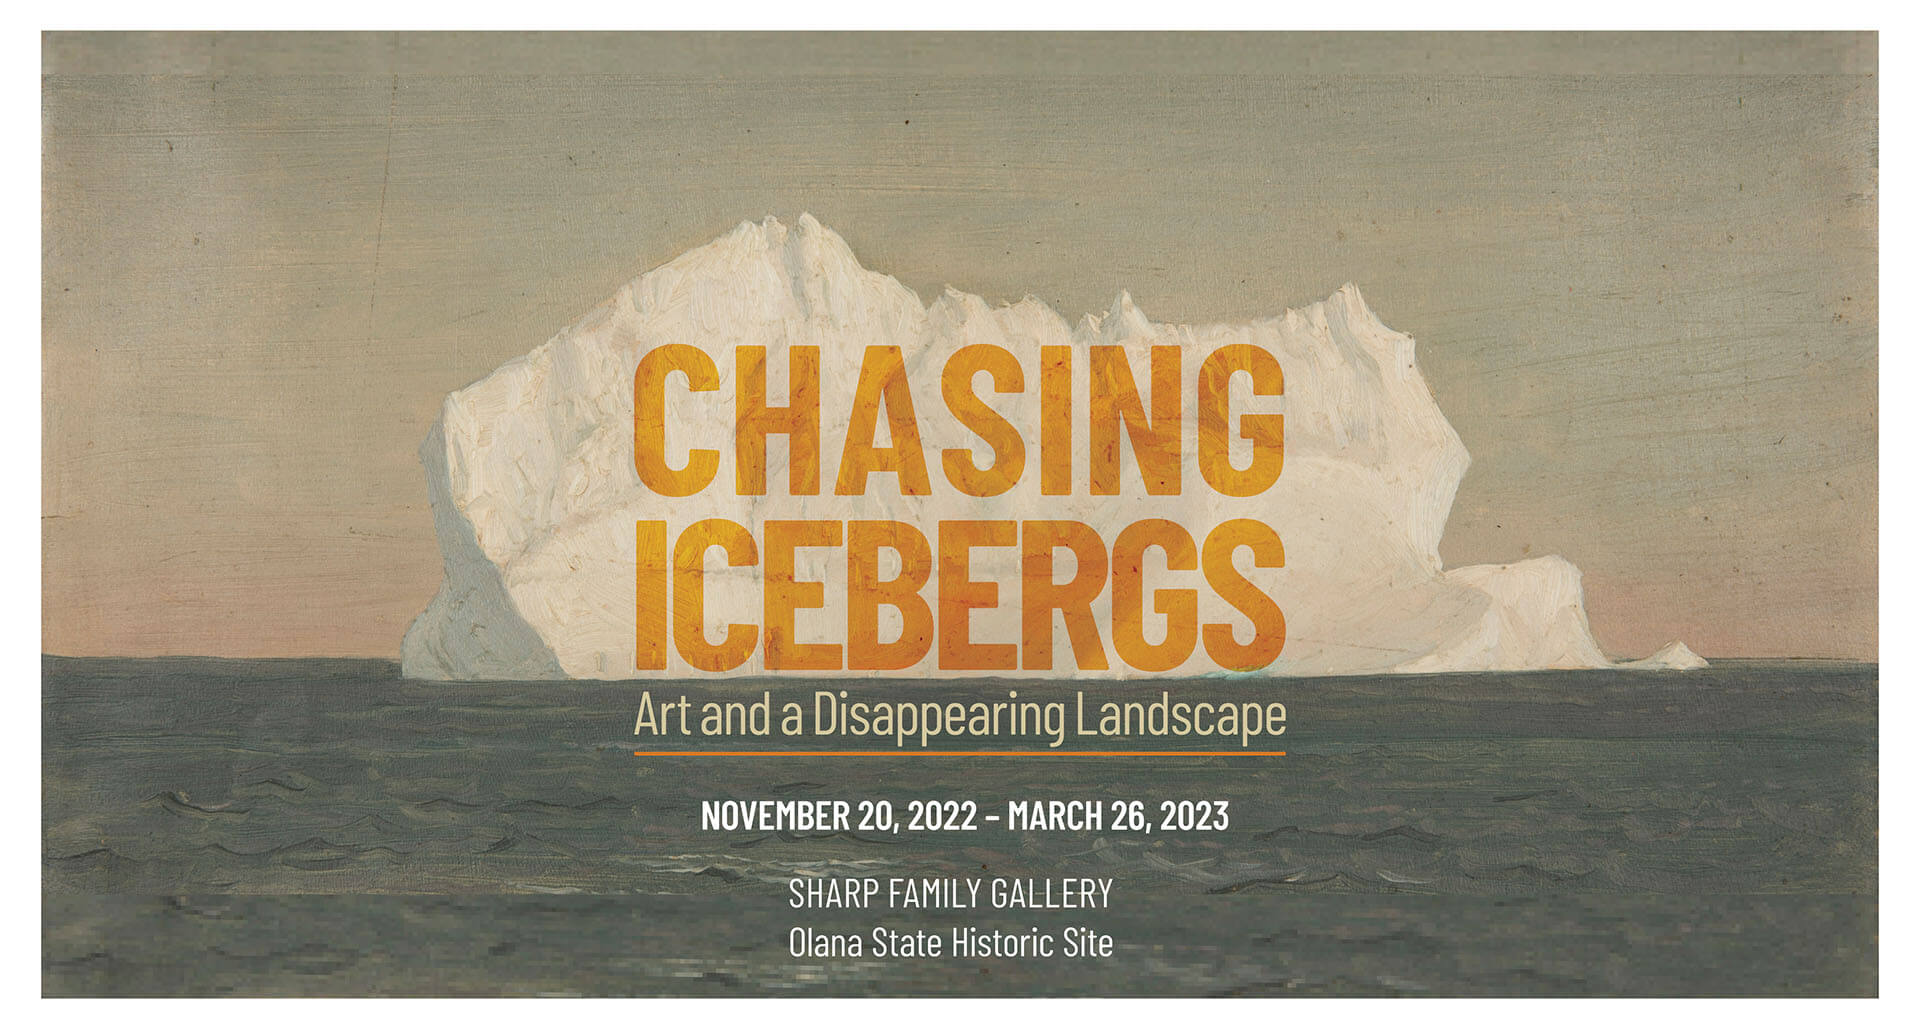 Chasing Icebergs